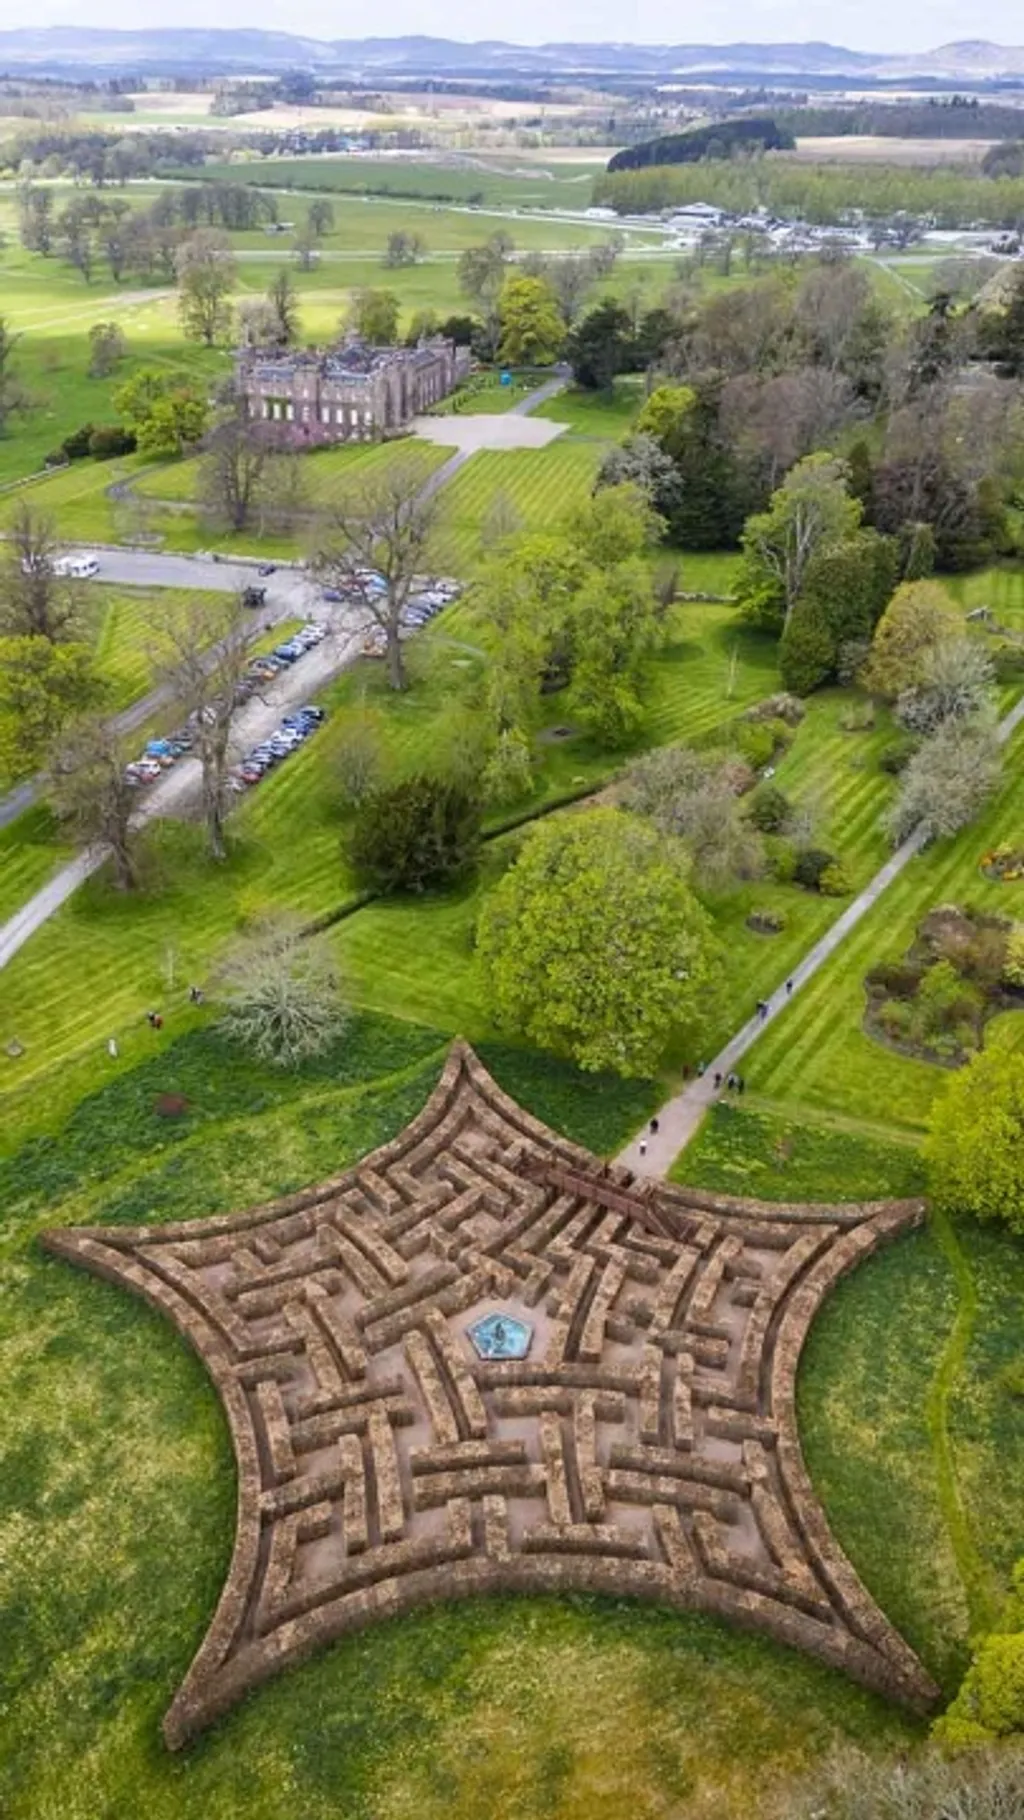 Murray-csillaglabirintus, Scone-i palota, labirintus, útvesztő, park, Skócia,  Nagy-Britannia, 